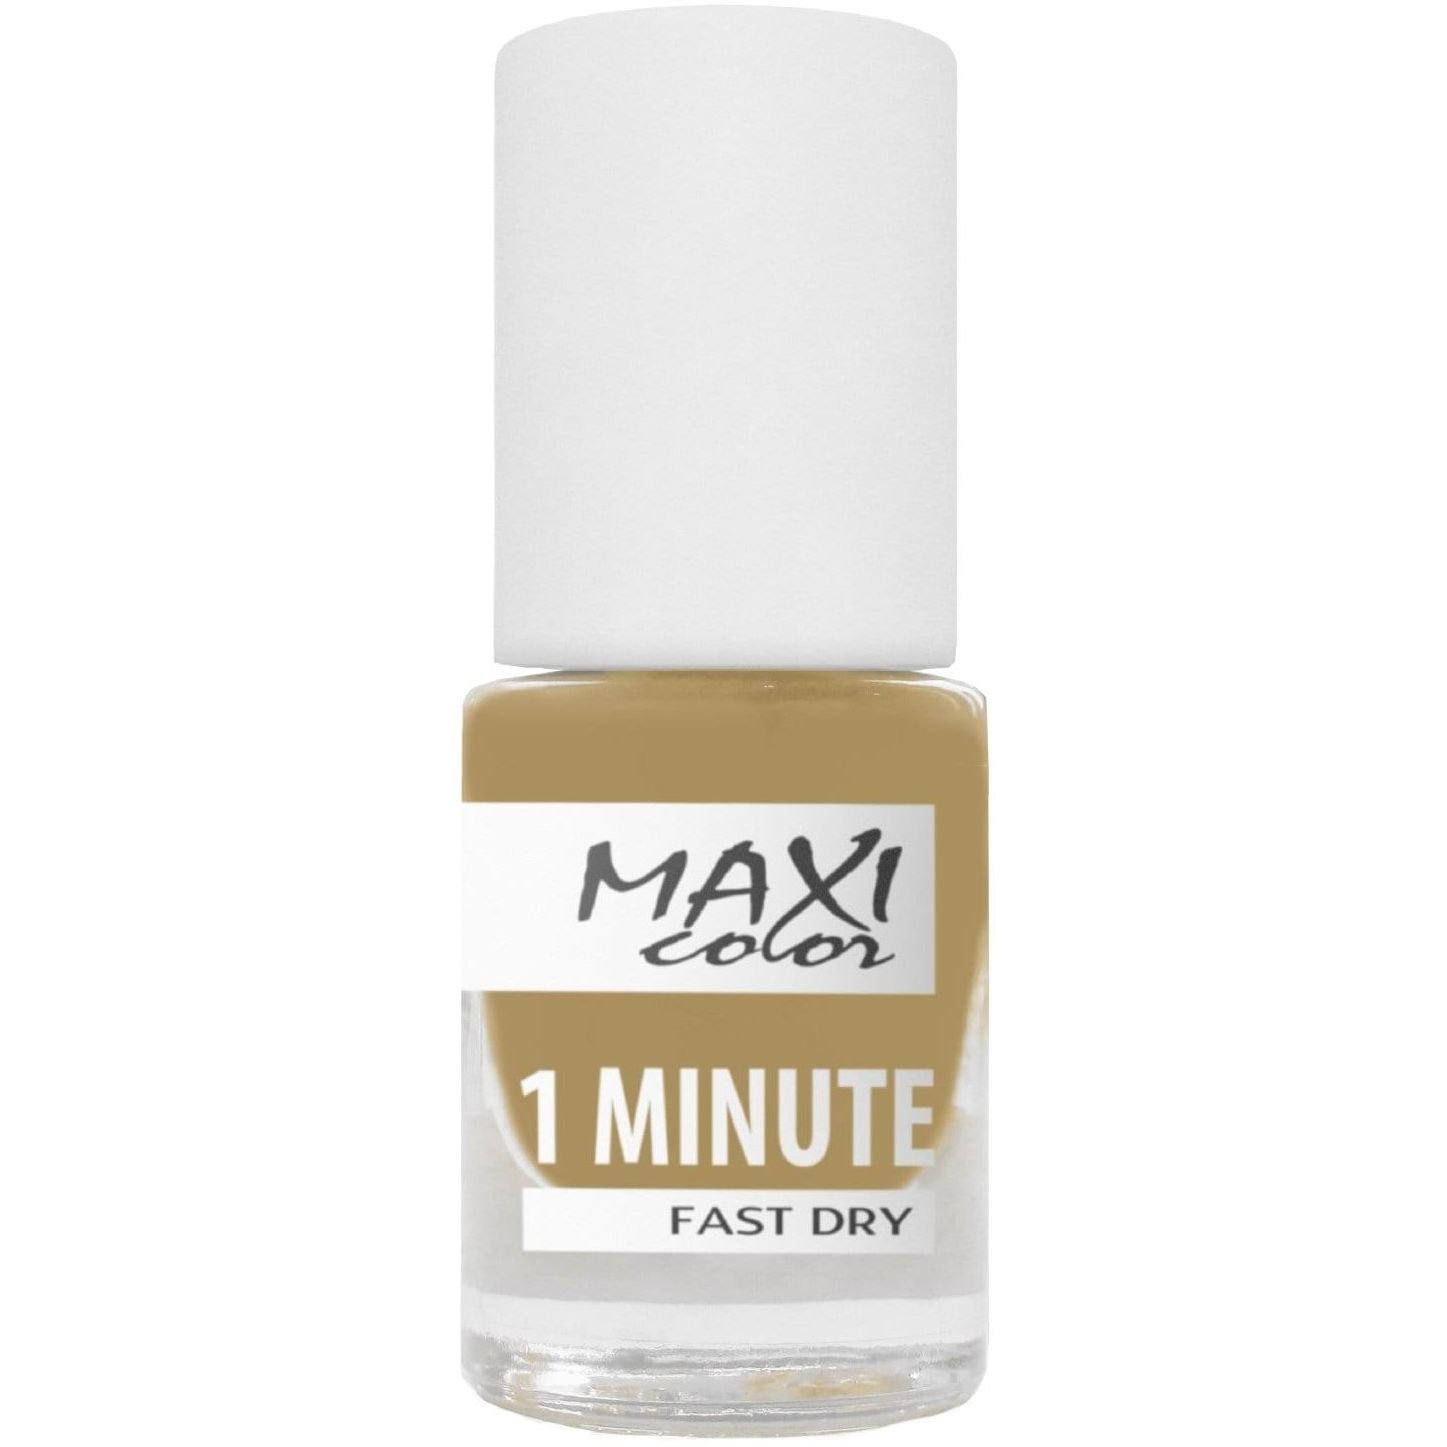 Лак для ногтей Maxi Color 1 Minute Fast Dry тон 028, 6 мл - фото 1